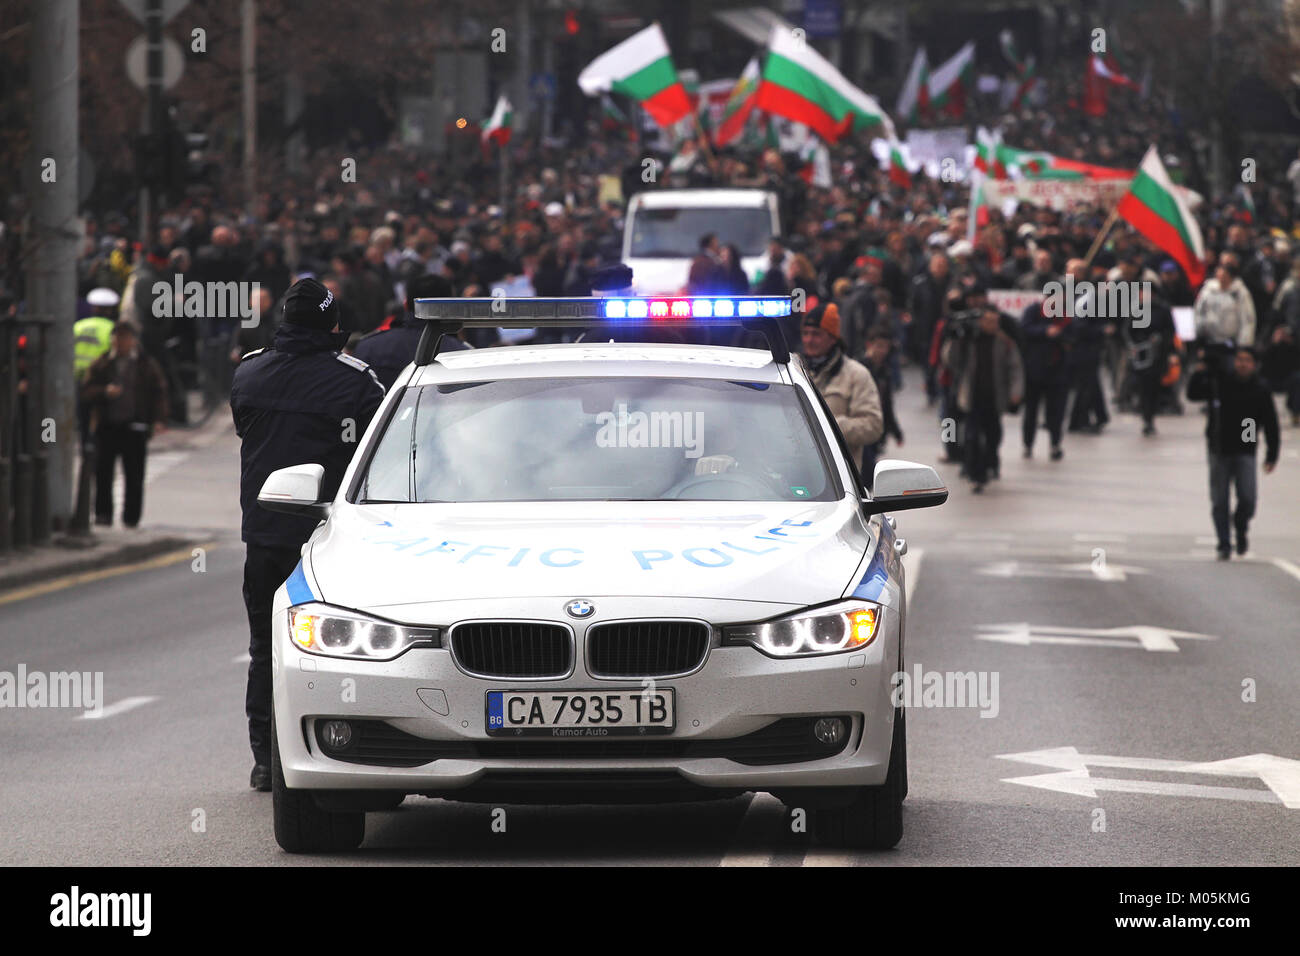 SOFIA, BULGARIE - 17 février 2013 : voitures de police de bloquer la circulation dans la partie centrale de Sofia pour protester contre les factures d'électricité de l'monop Banque D'Images